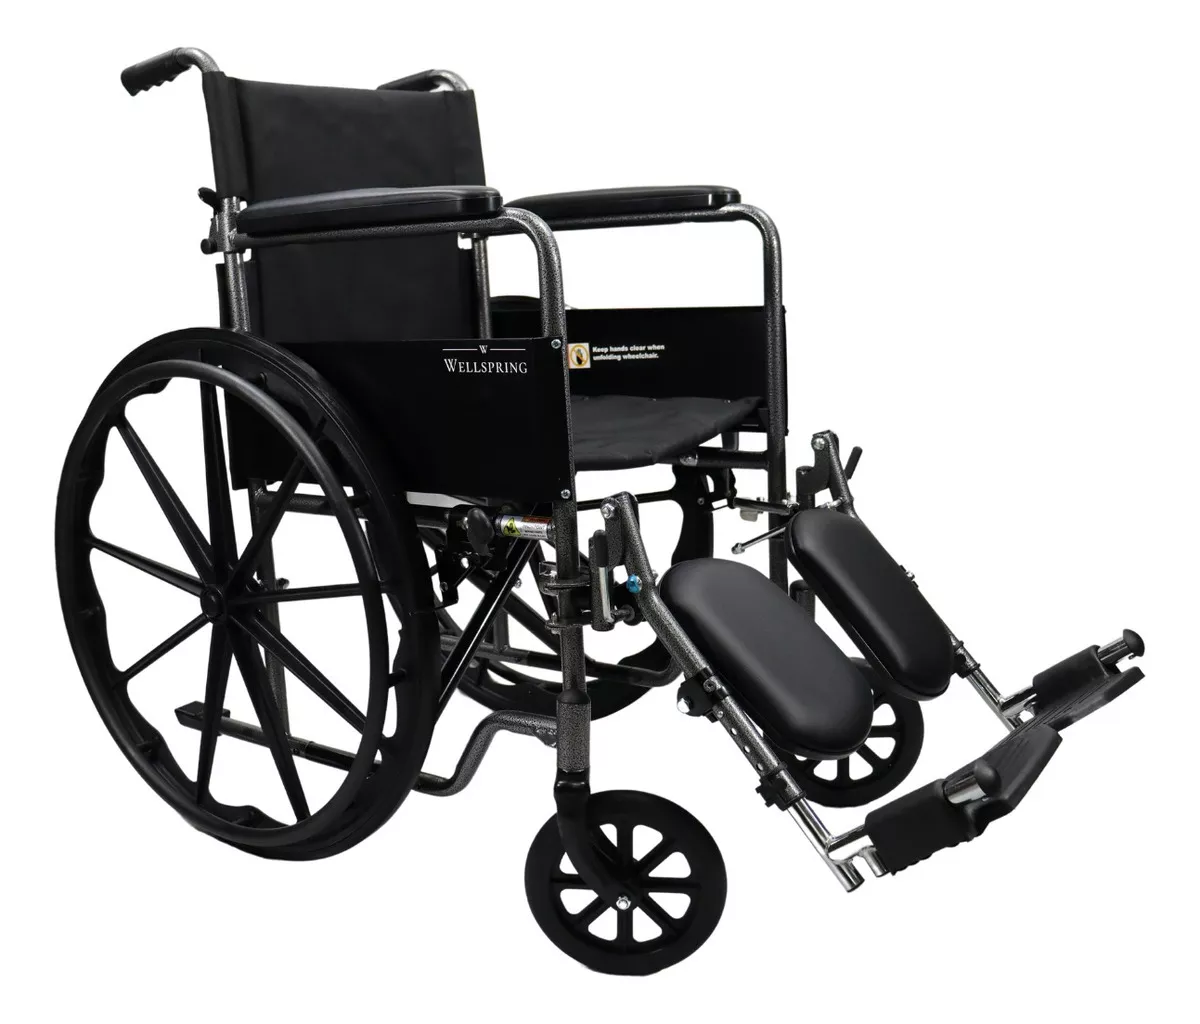 Primera imagen para búsqueda de sillas de ruedas